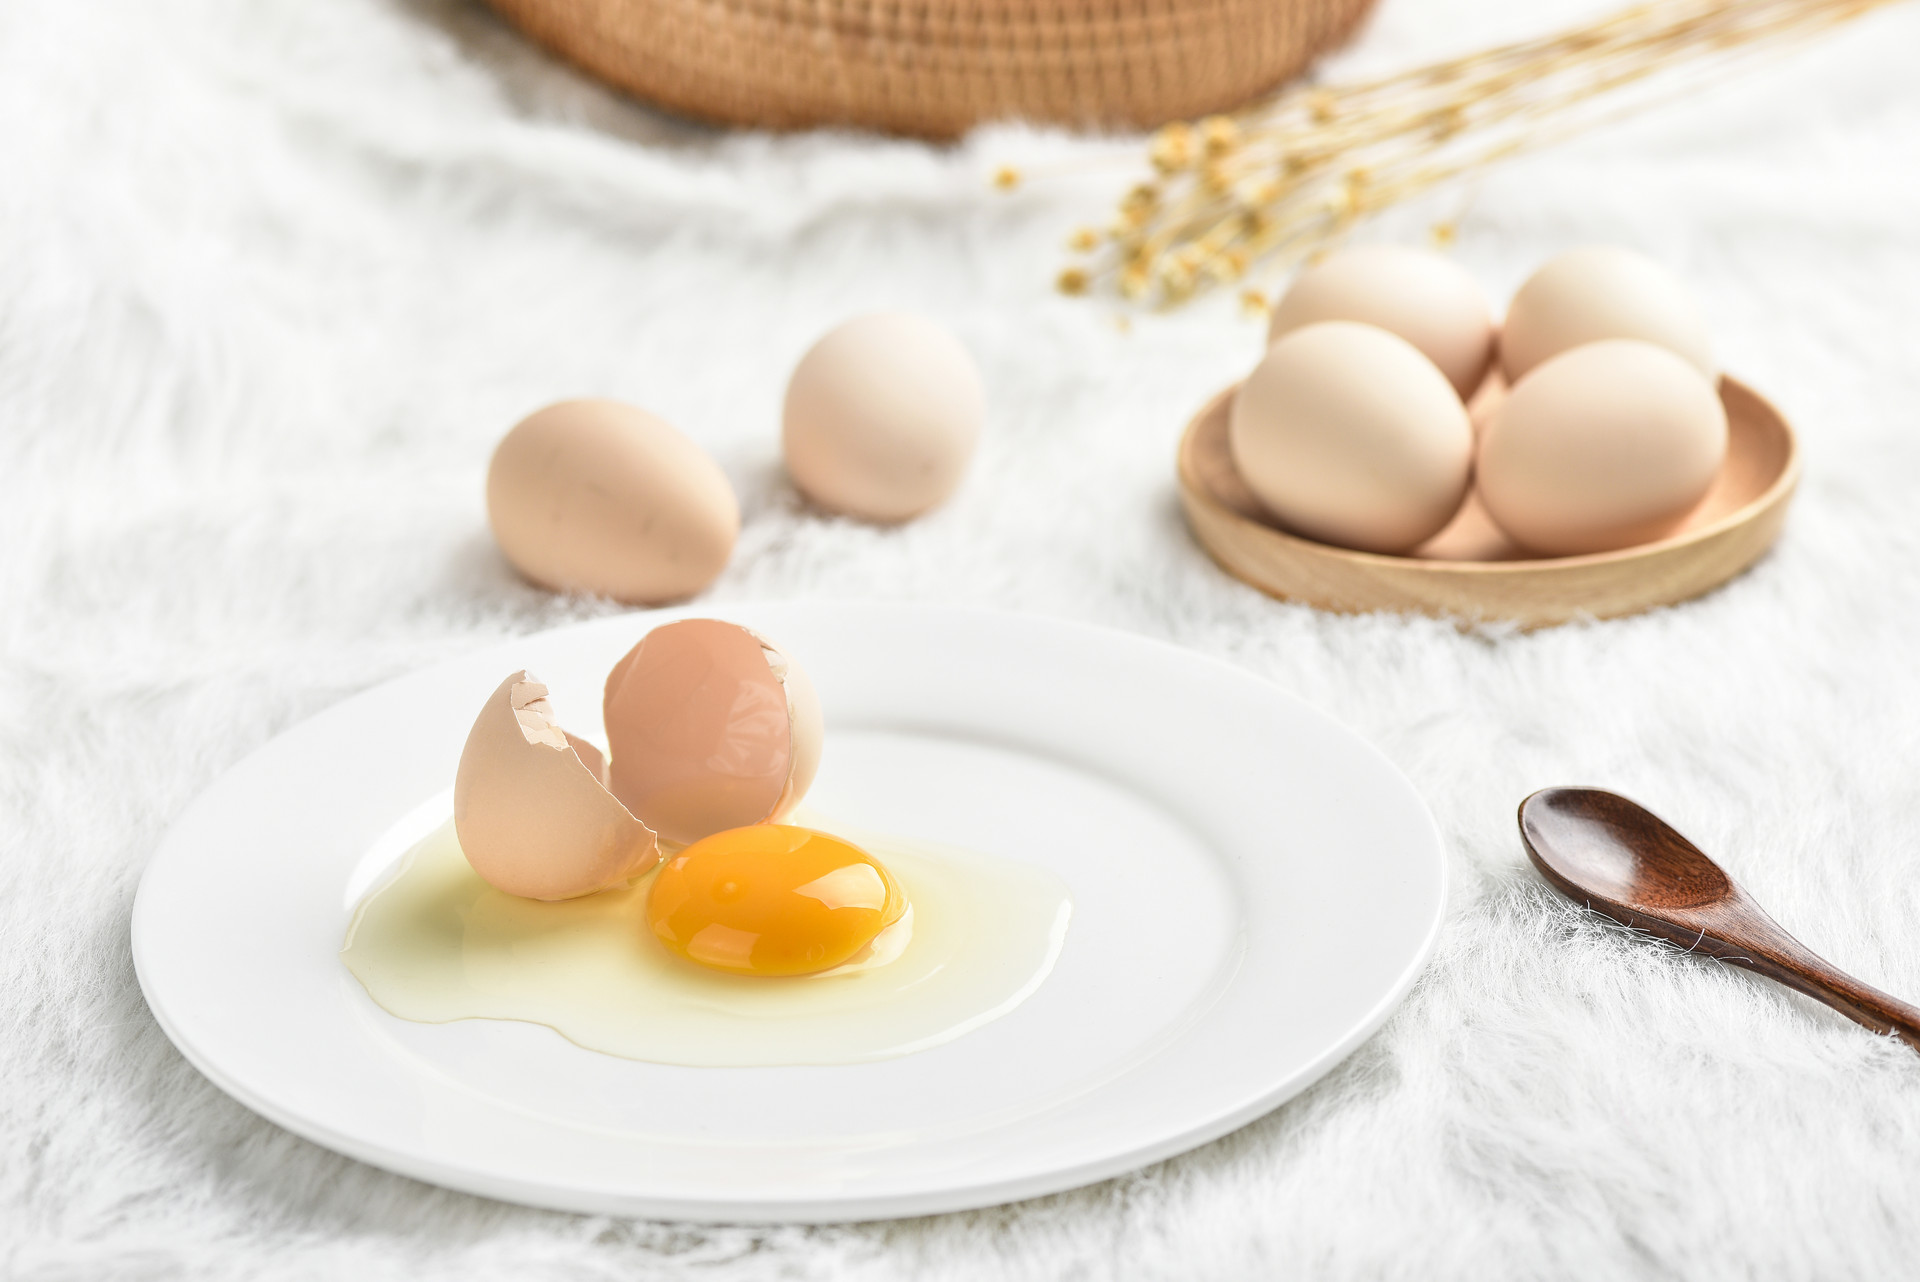 土鸡蛋最高贵、蛋黄要少吃 这10个鸡蛋谣言你一定要区分